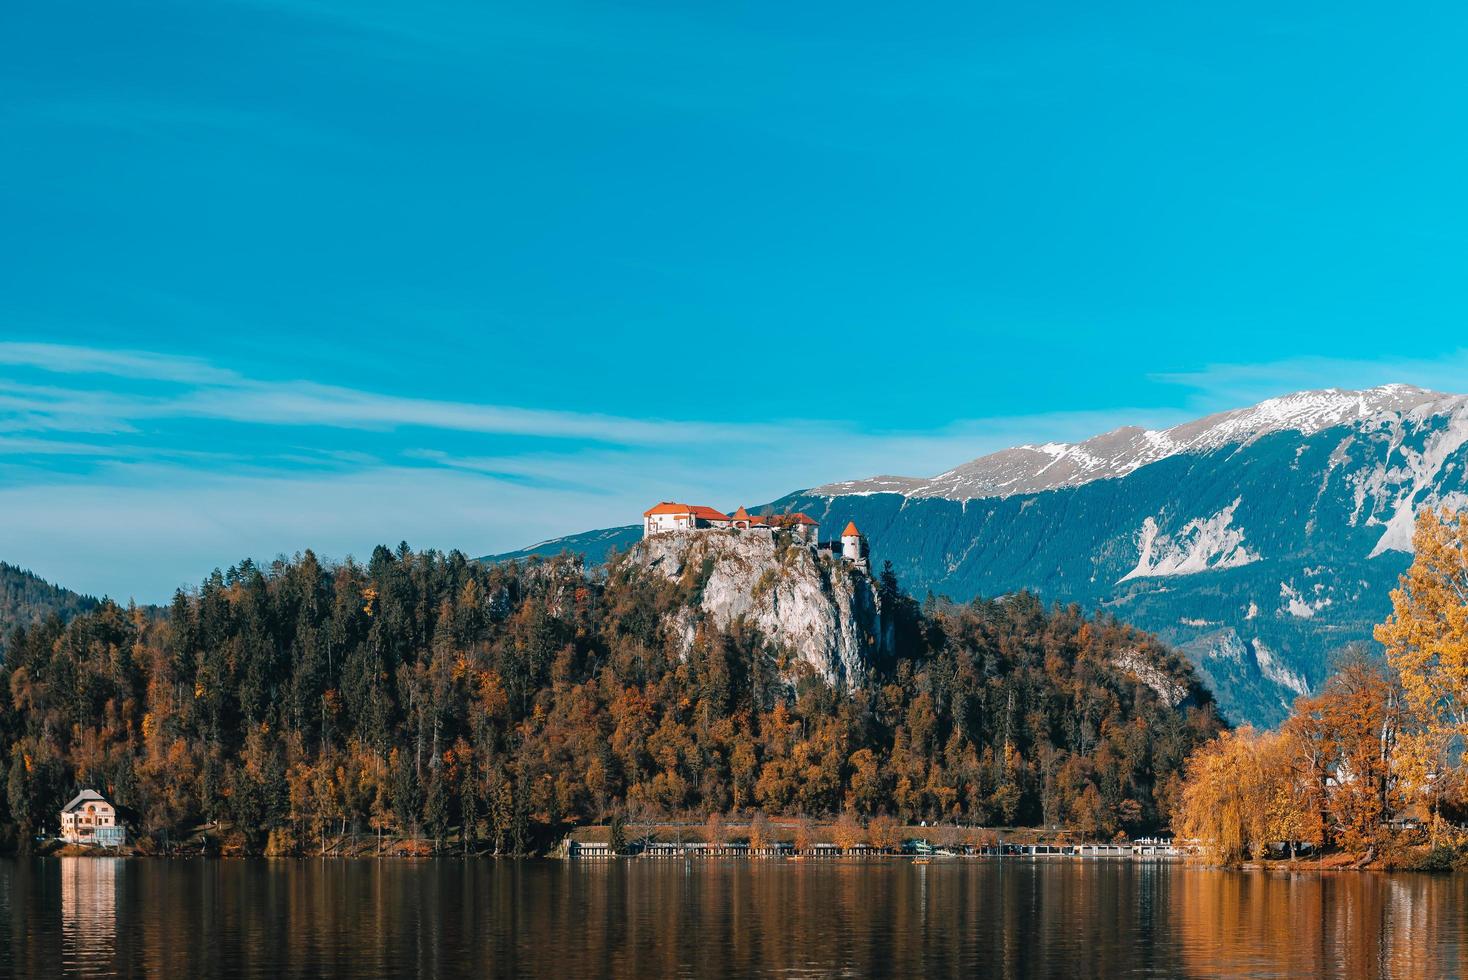 lago sangrado en las montañas alpinas foto